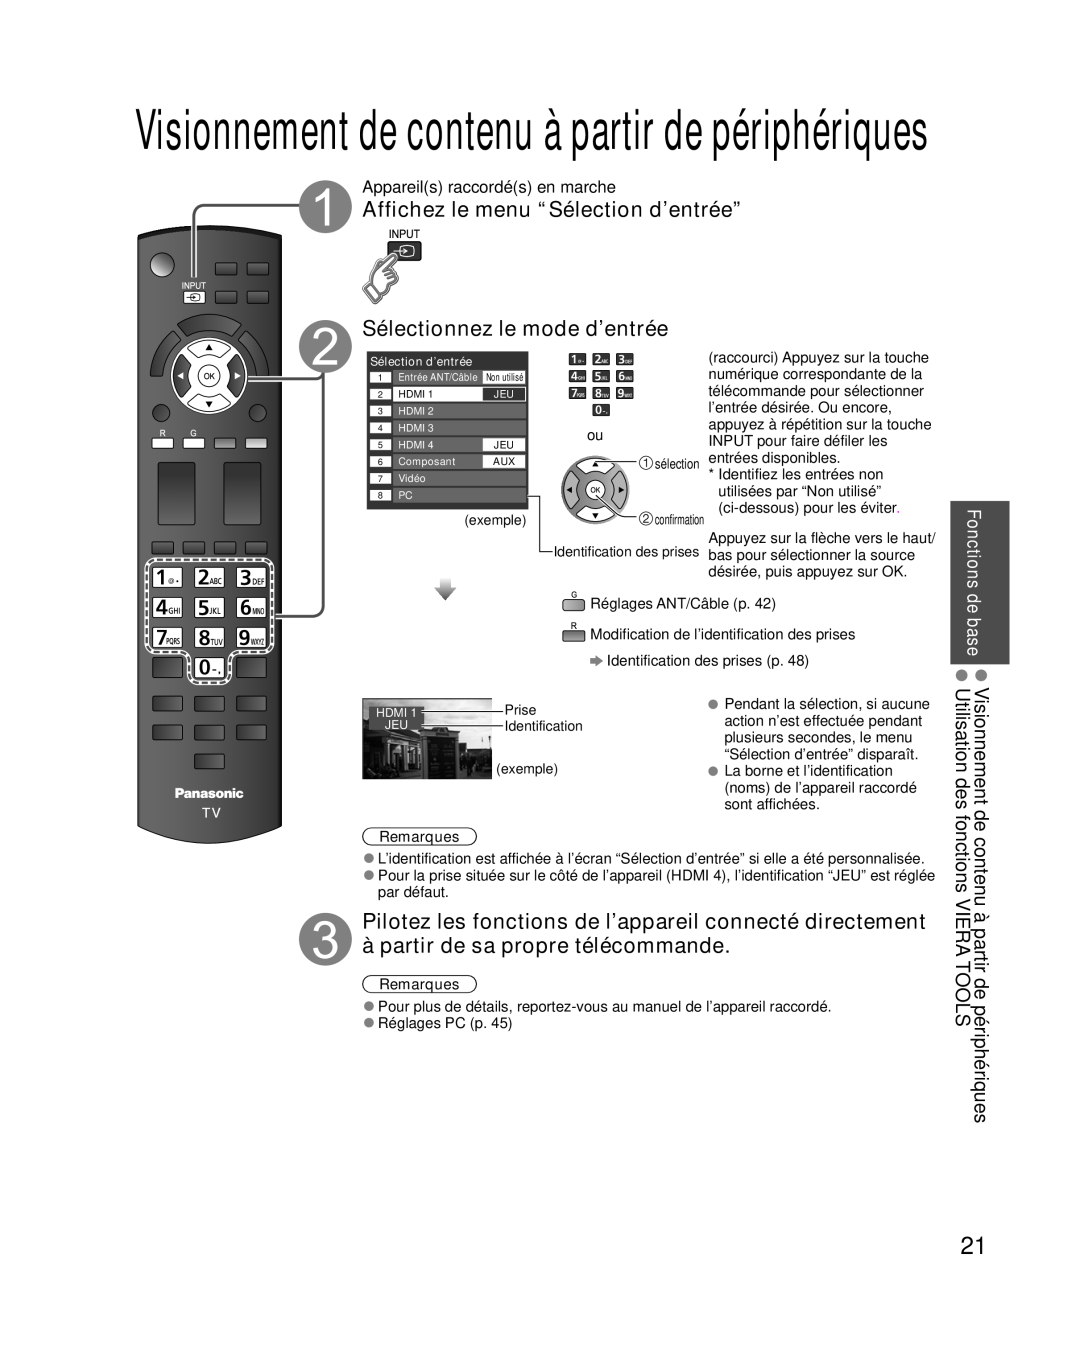 Panasonic TC-L32E3, TC-L37E3 Visionnement de contenu à partir de périphériques, Appareils raccordés en marche, Remarques 